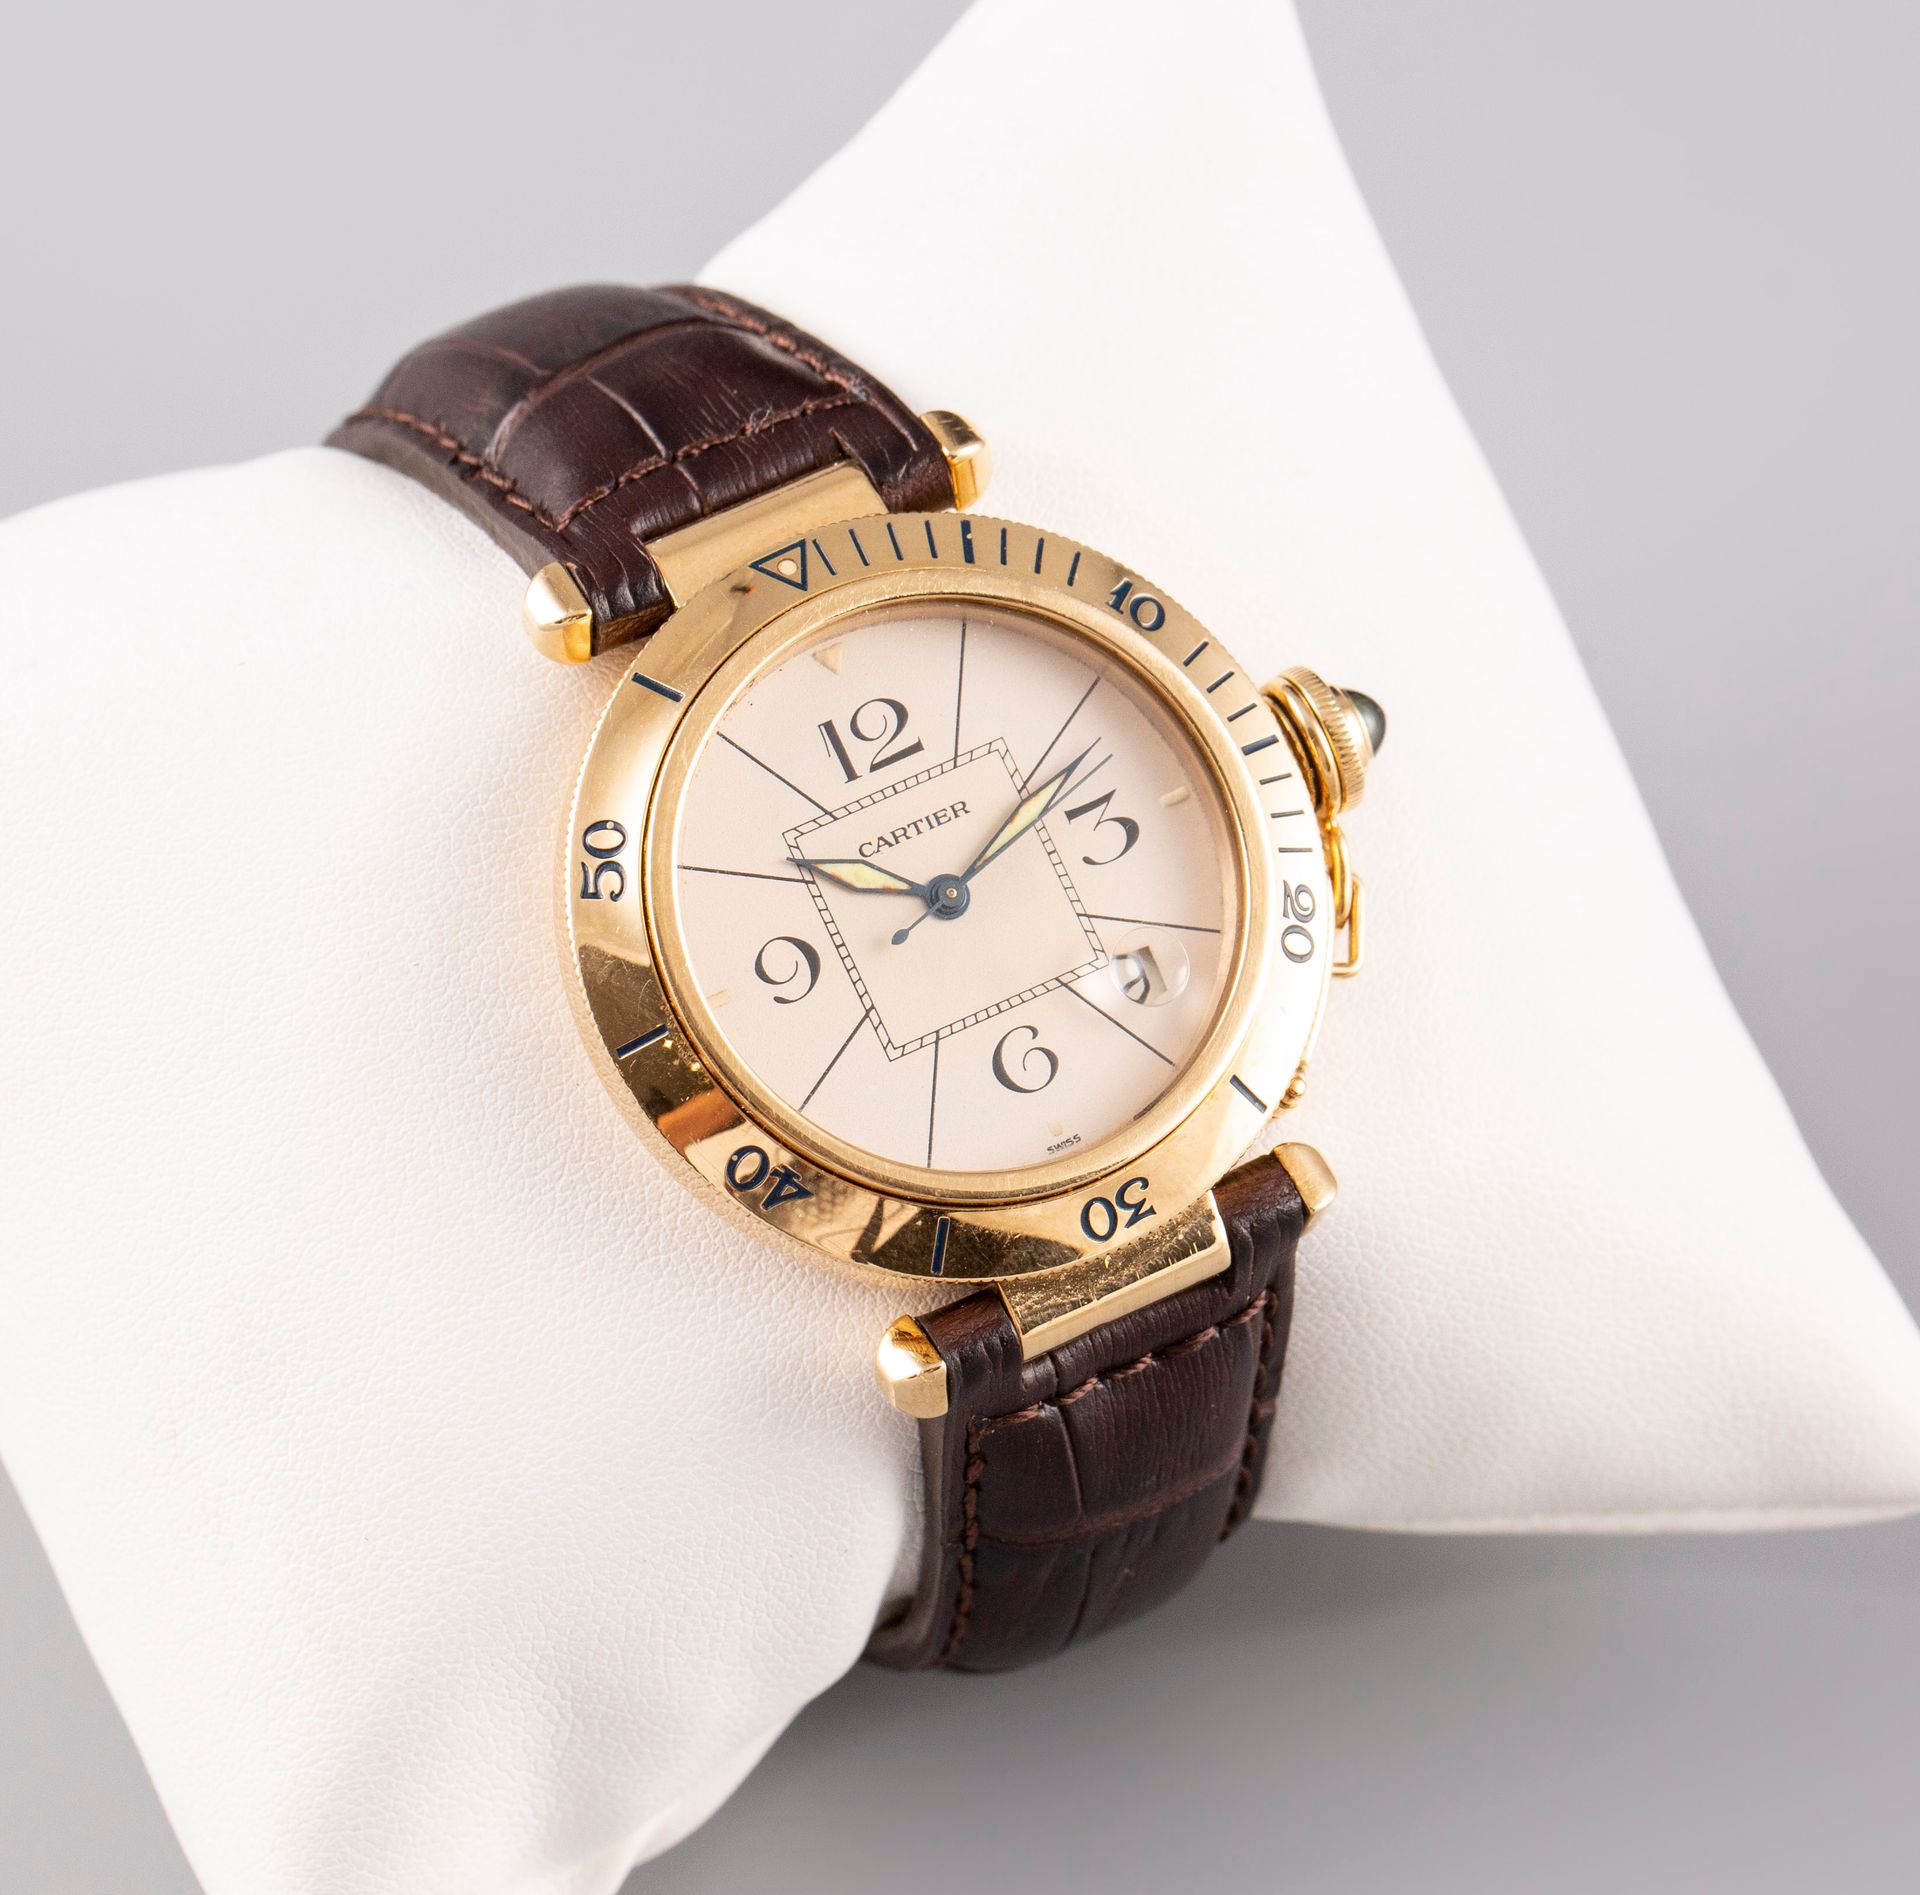 Null 卡地亚。PACHA型号的手表。黄金表壳和折叠式表扣。自动机芯，年份为1989年，型号为M101561。